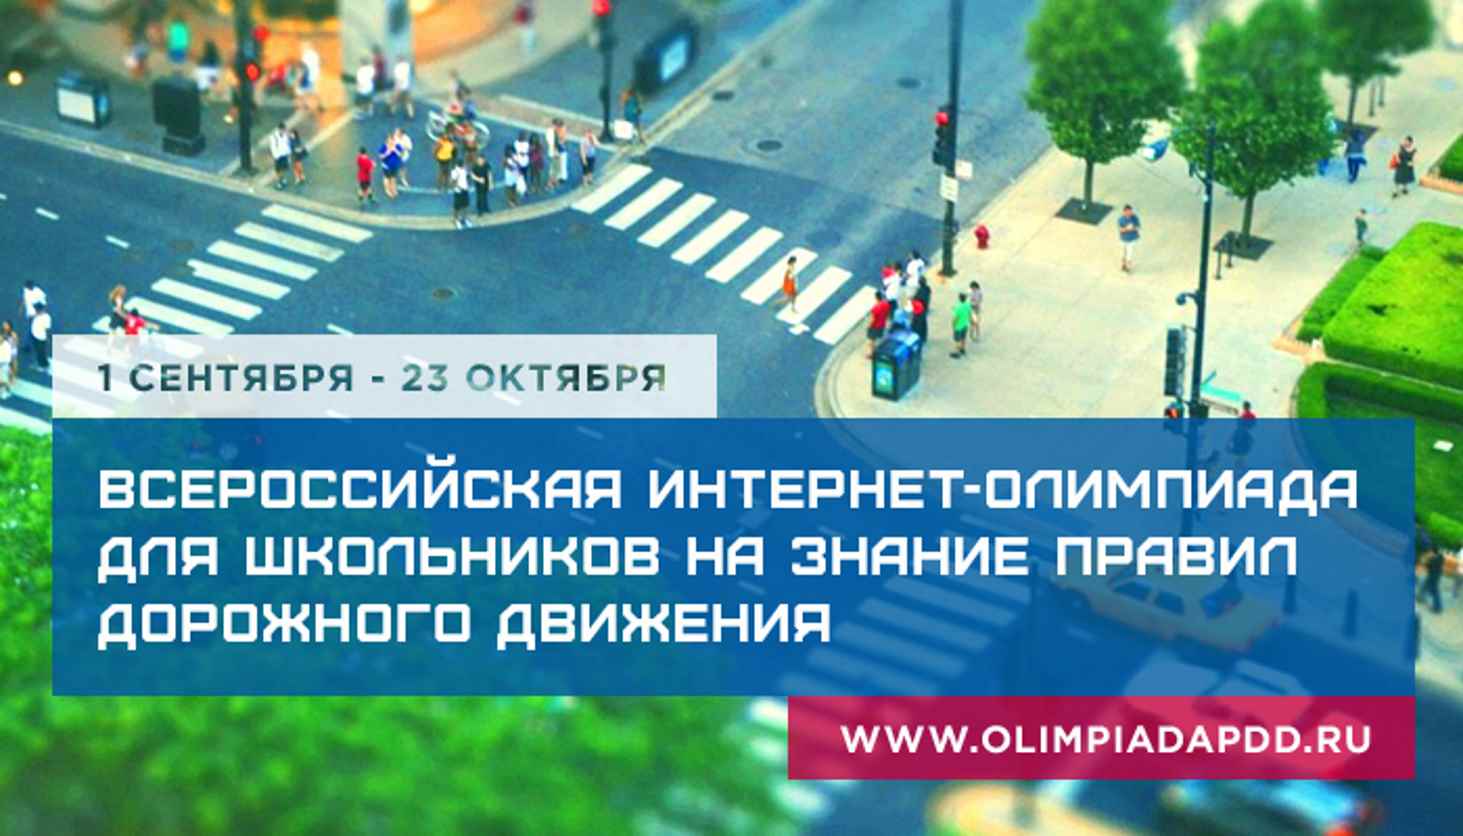 v-sentyabre-startuet-vserossijskaja-internet-olimpiada-na-znanie-pravil-dorozhnogo-dvizhenia